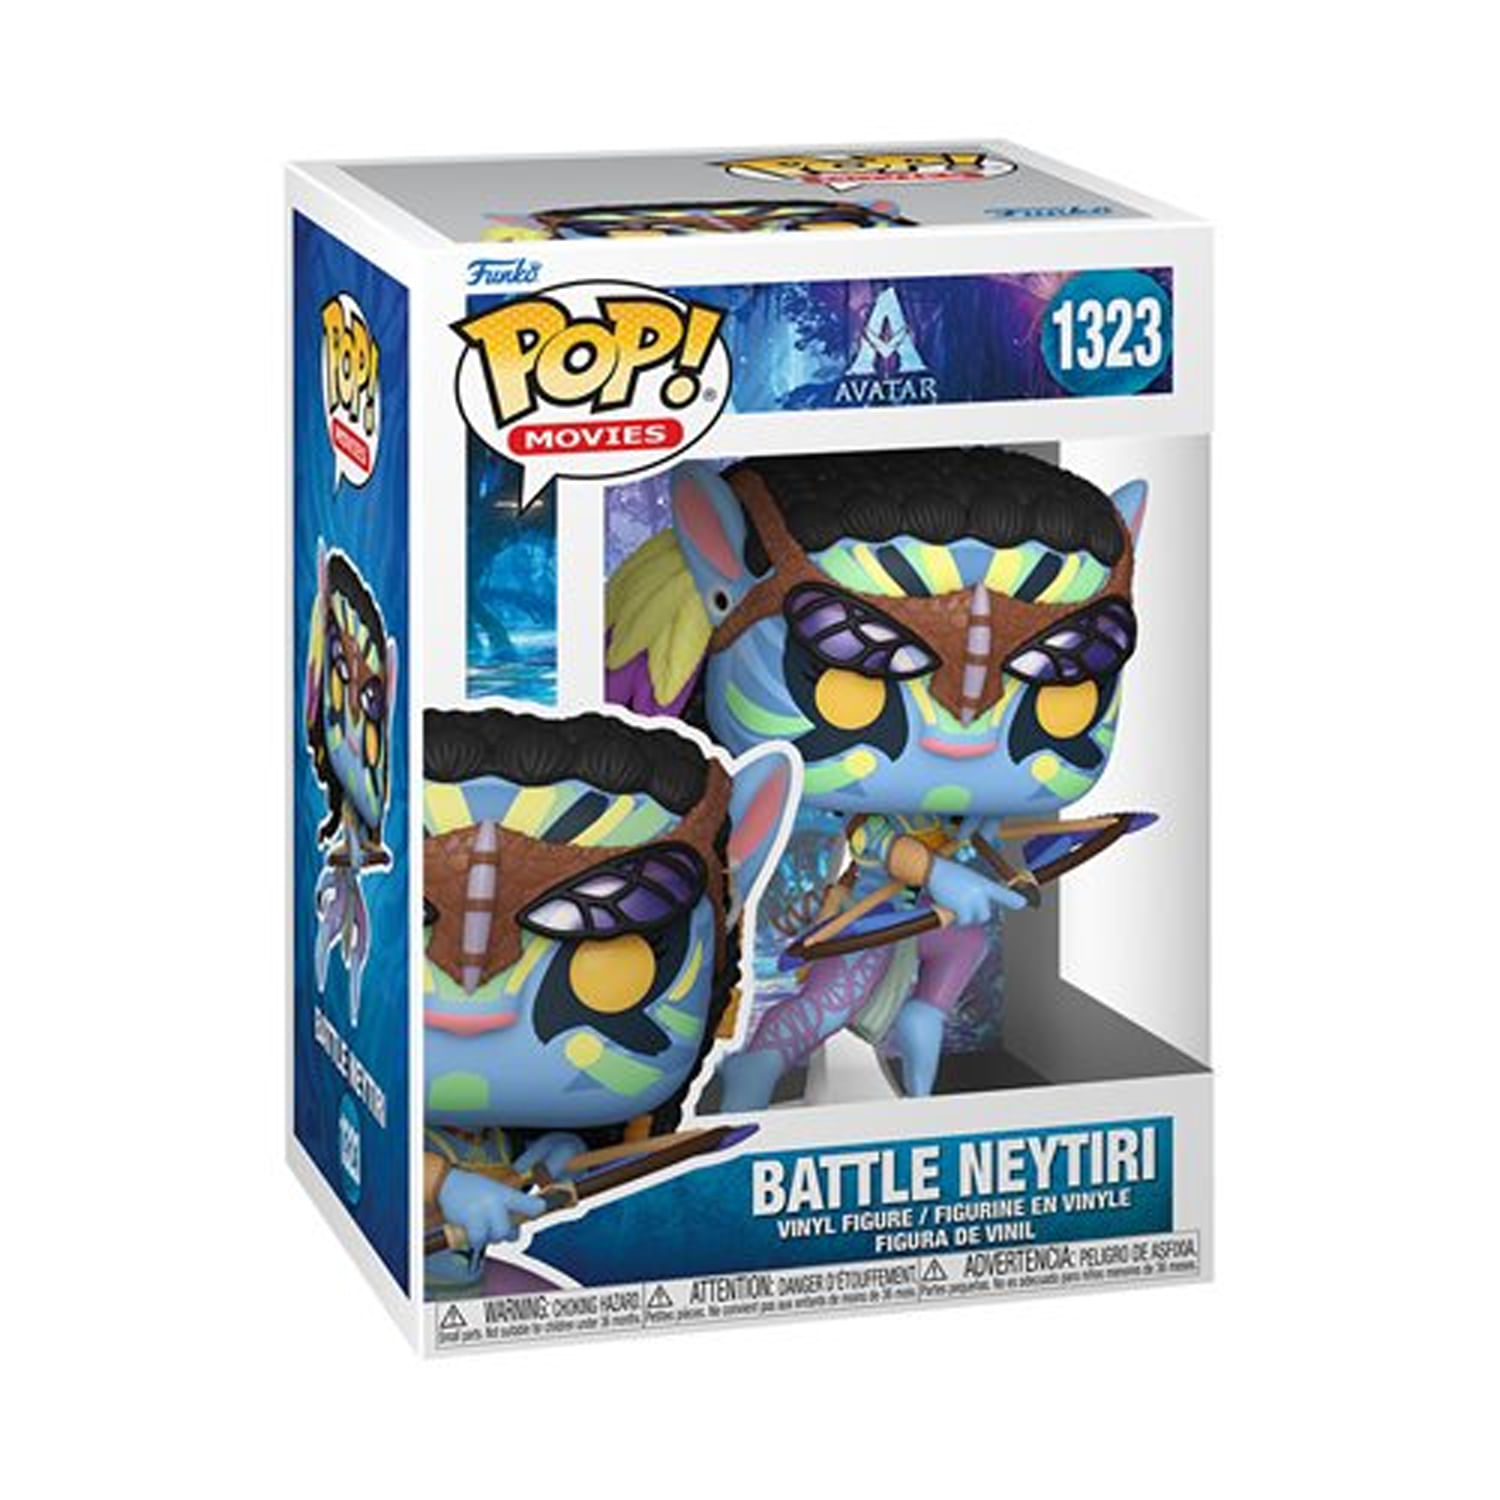 Avatar Battle Neytiri Funko Pop Vinyl Figure 1323